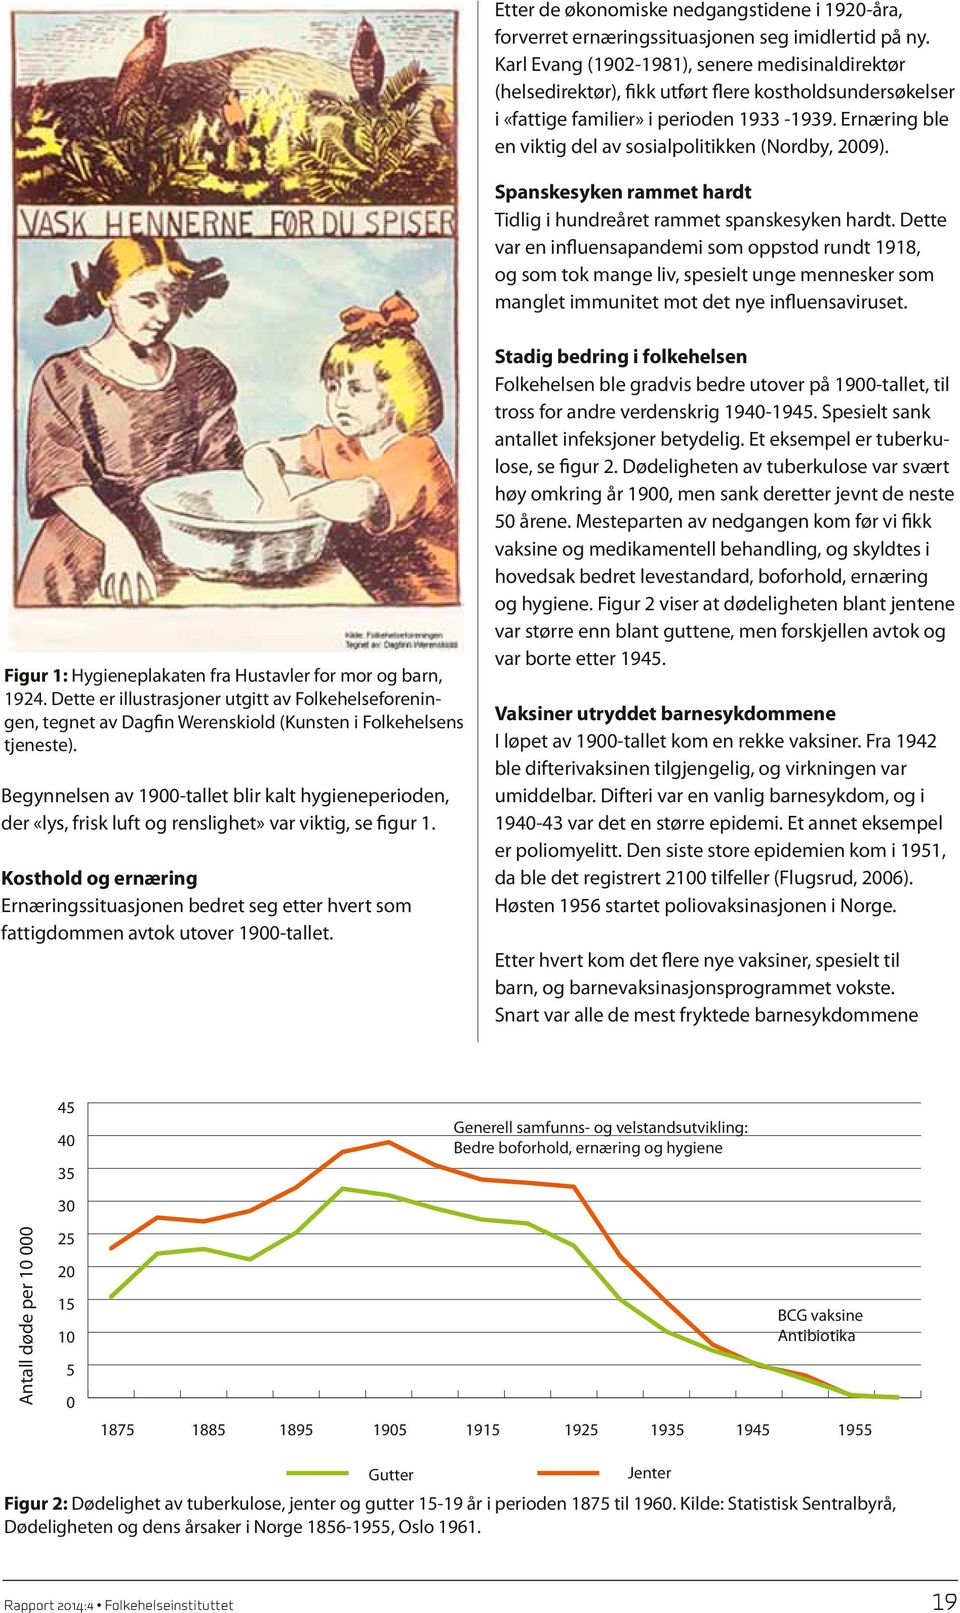 Ernæring ble en viktig del av sosialpolitikken (Nordby, 2009). Spanskesyken rammet hardt Tidlig i hundreåret rammet spanskesyken hardt.